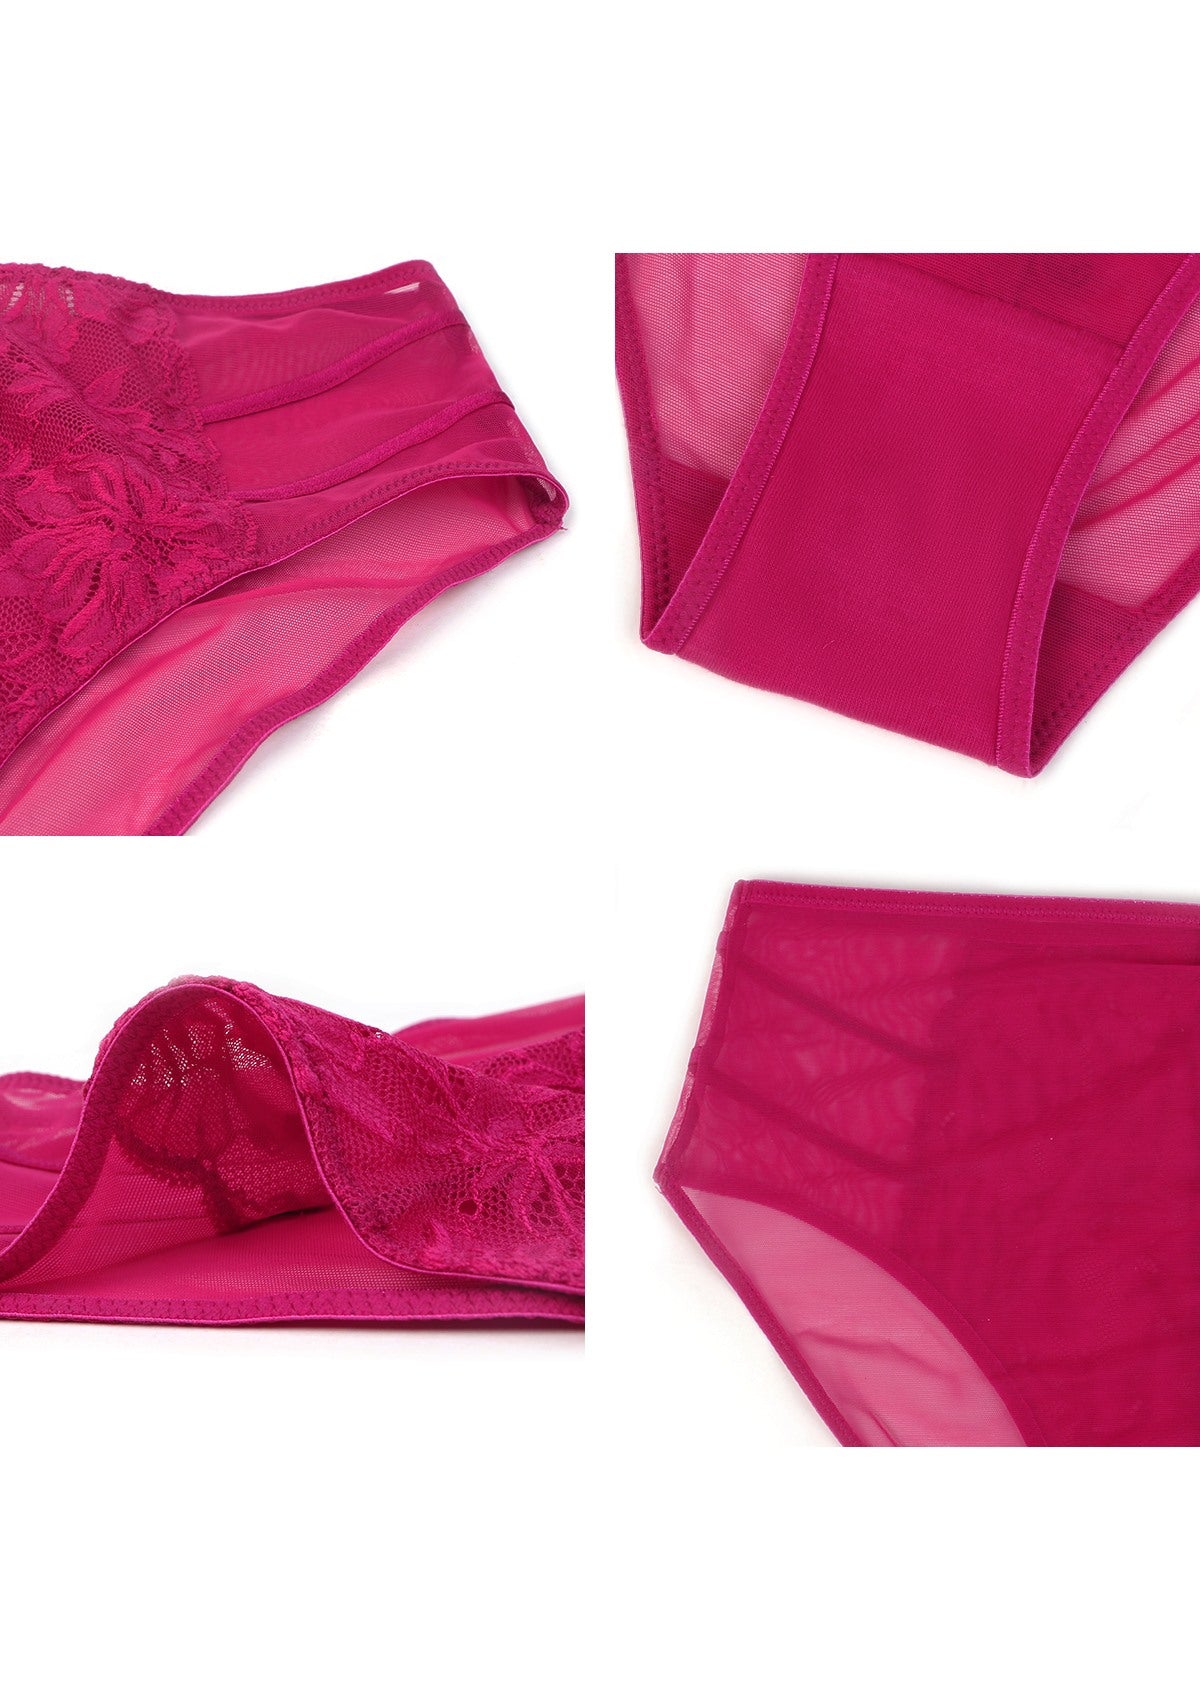 HSIA Pretty In Petals Mid-Rise Sexy Lace Everyday Underwear  - M / Bikini / Red